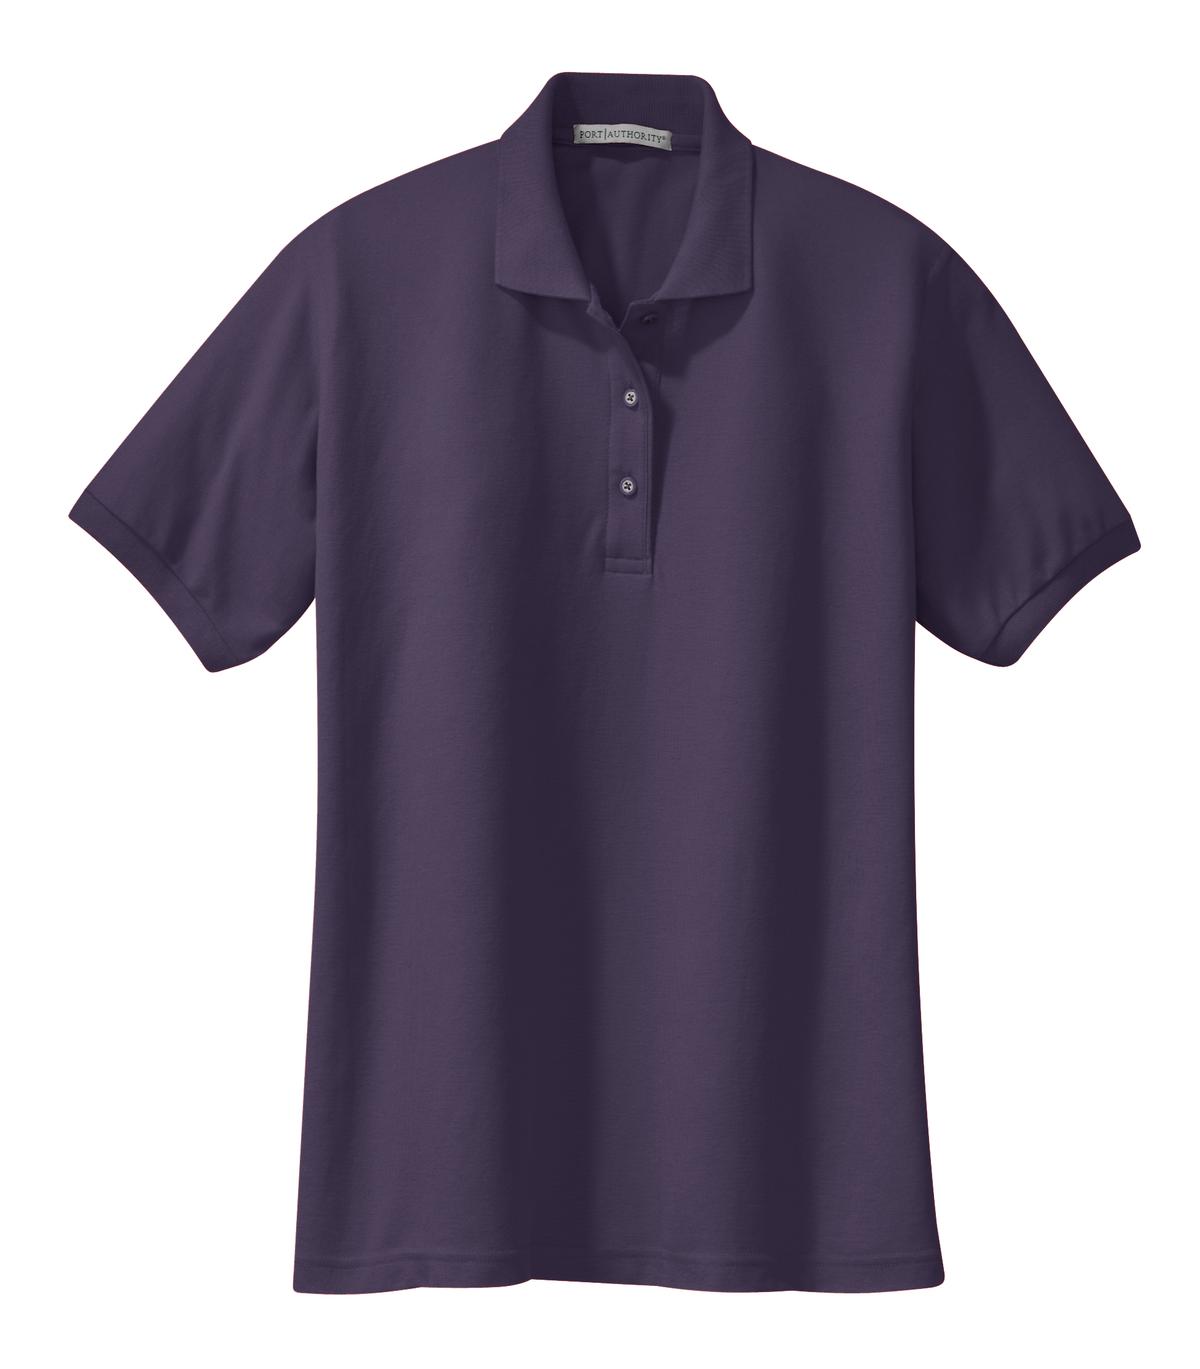 [Custom] Cotton Blend Polo (Ladies) (Colors: Blue, Purple) [L500]